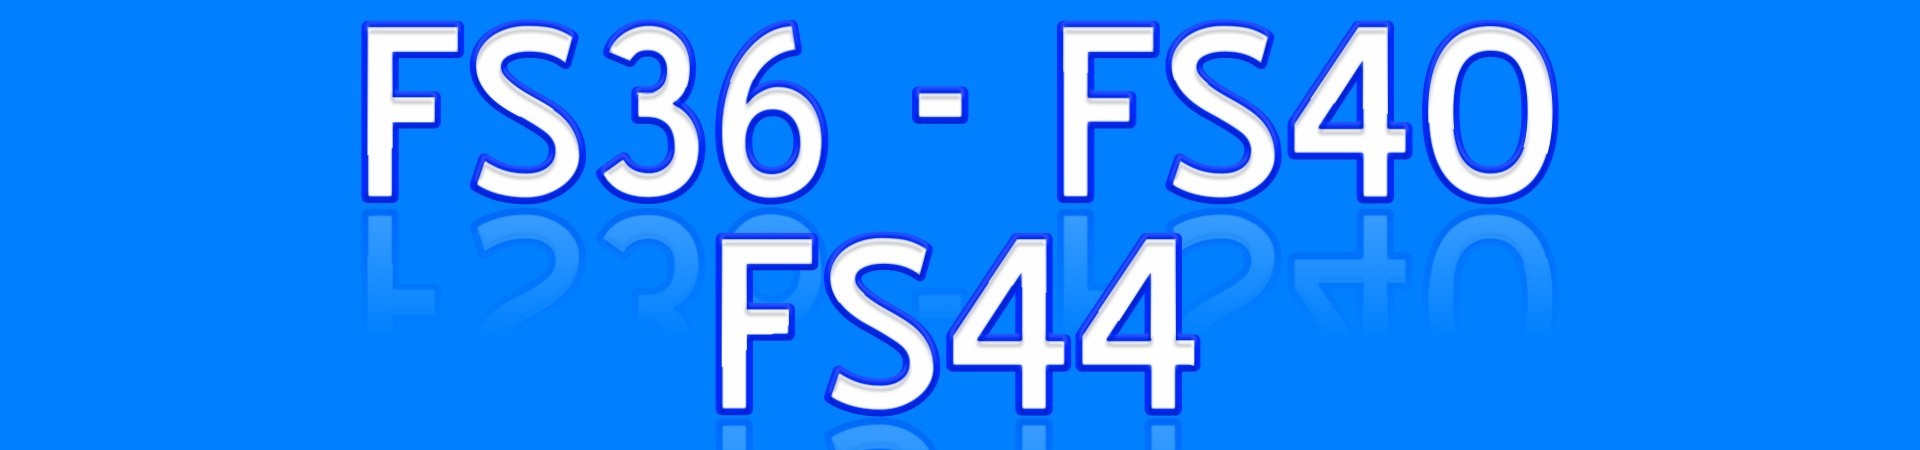 FS36 FS40 FS44